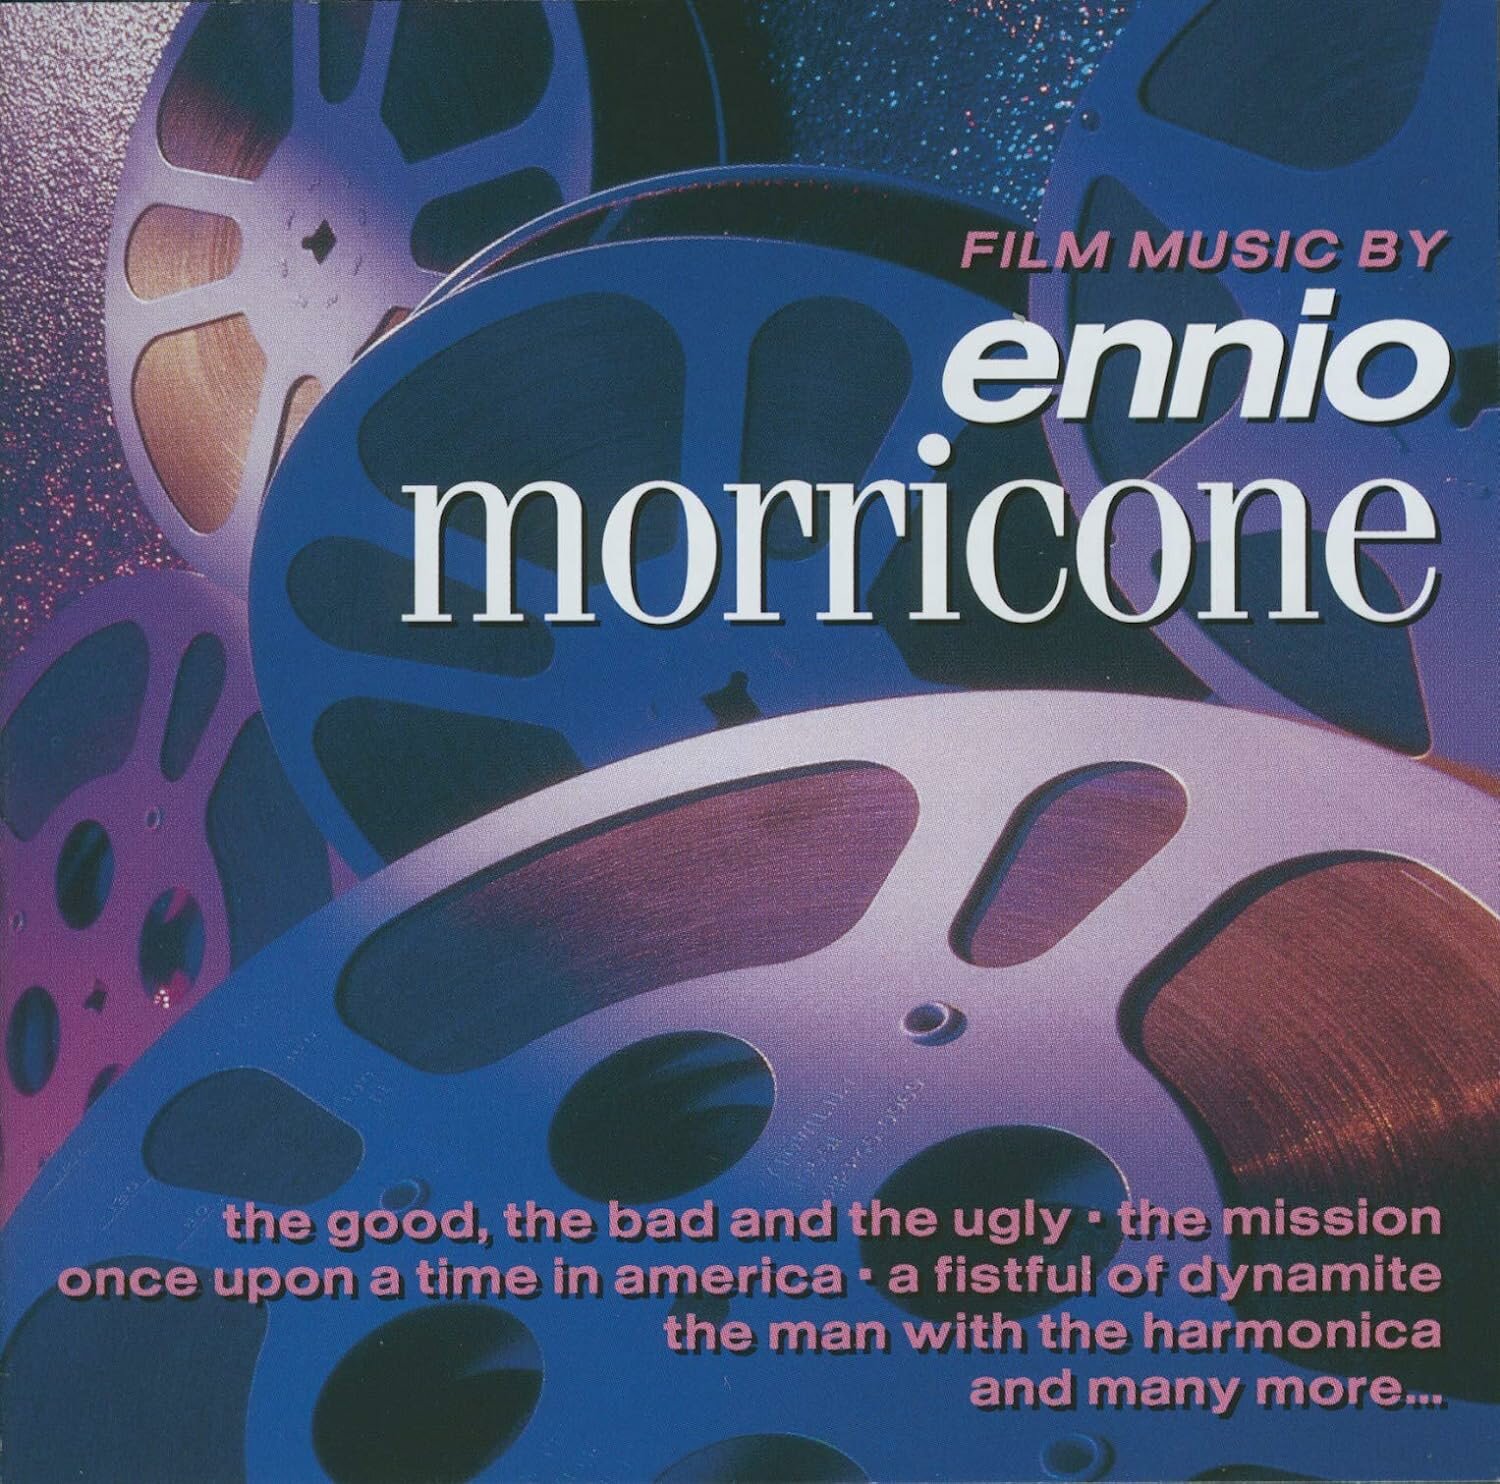 Ennio Morricone Film Music By Ennio Morricone (CD) Virgin VIP Music